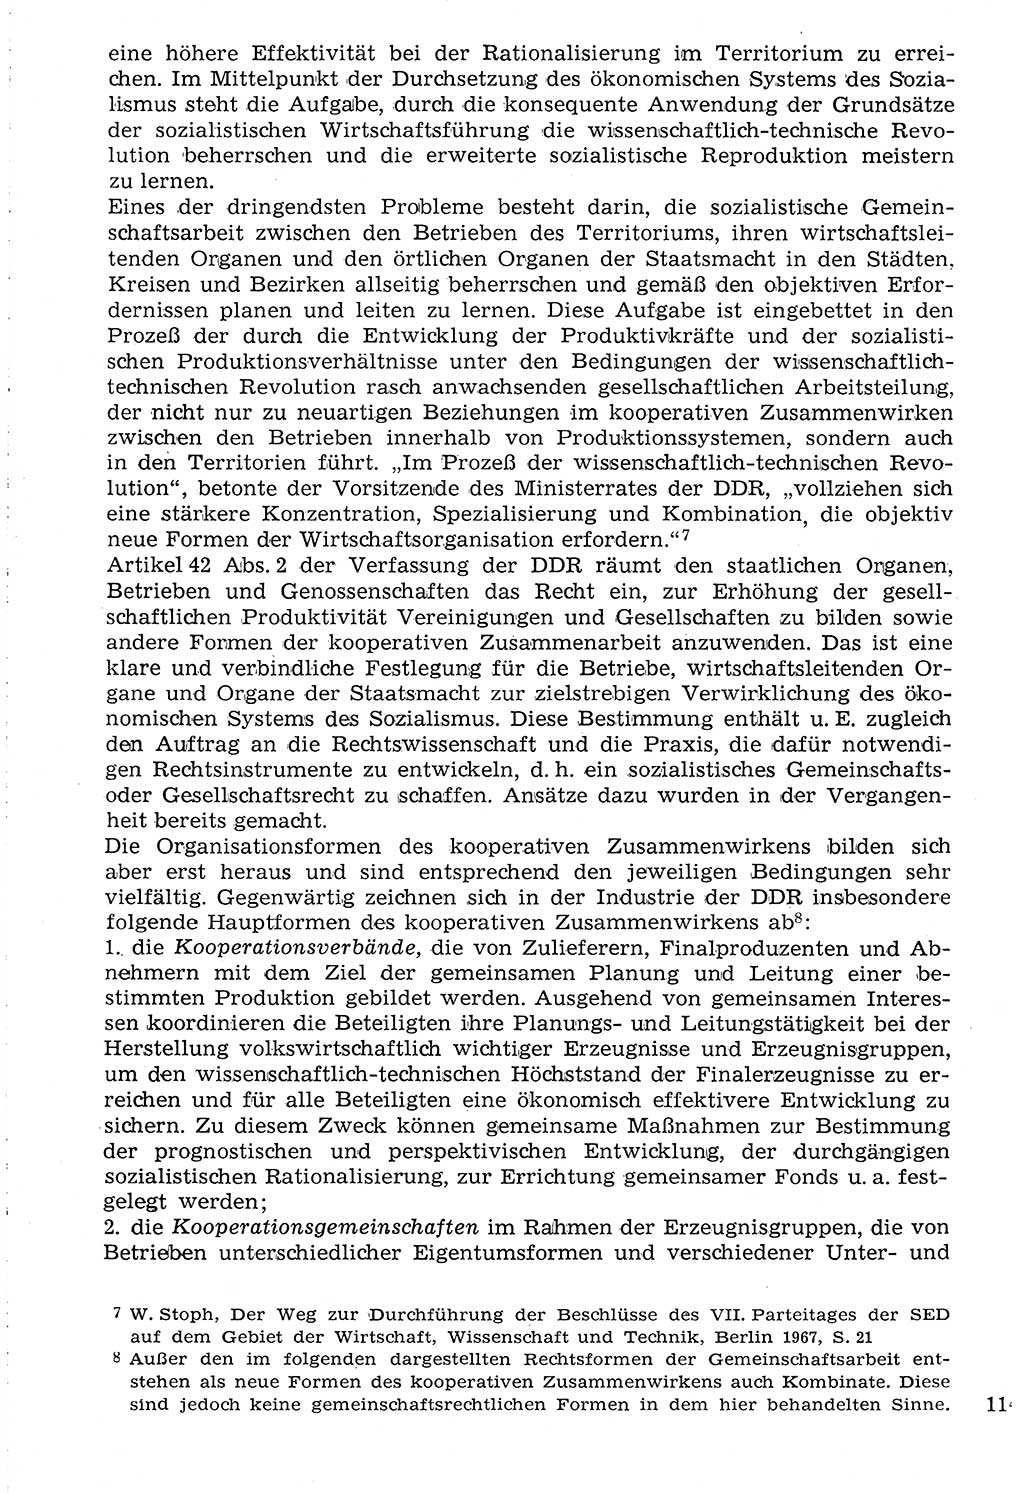 Staat und Recht (StuR), 17. Jahrgang [Deutsche Demokratische Republik (DDR)] 1968, Seite 1148 (StuR DDR 1968, S. 1148)